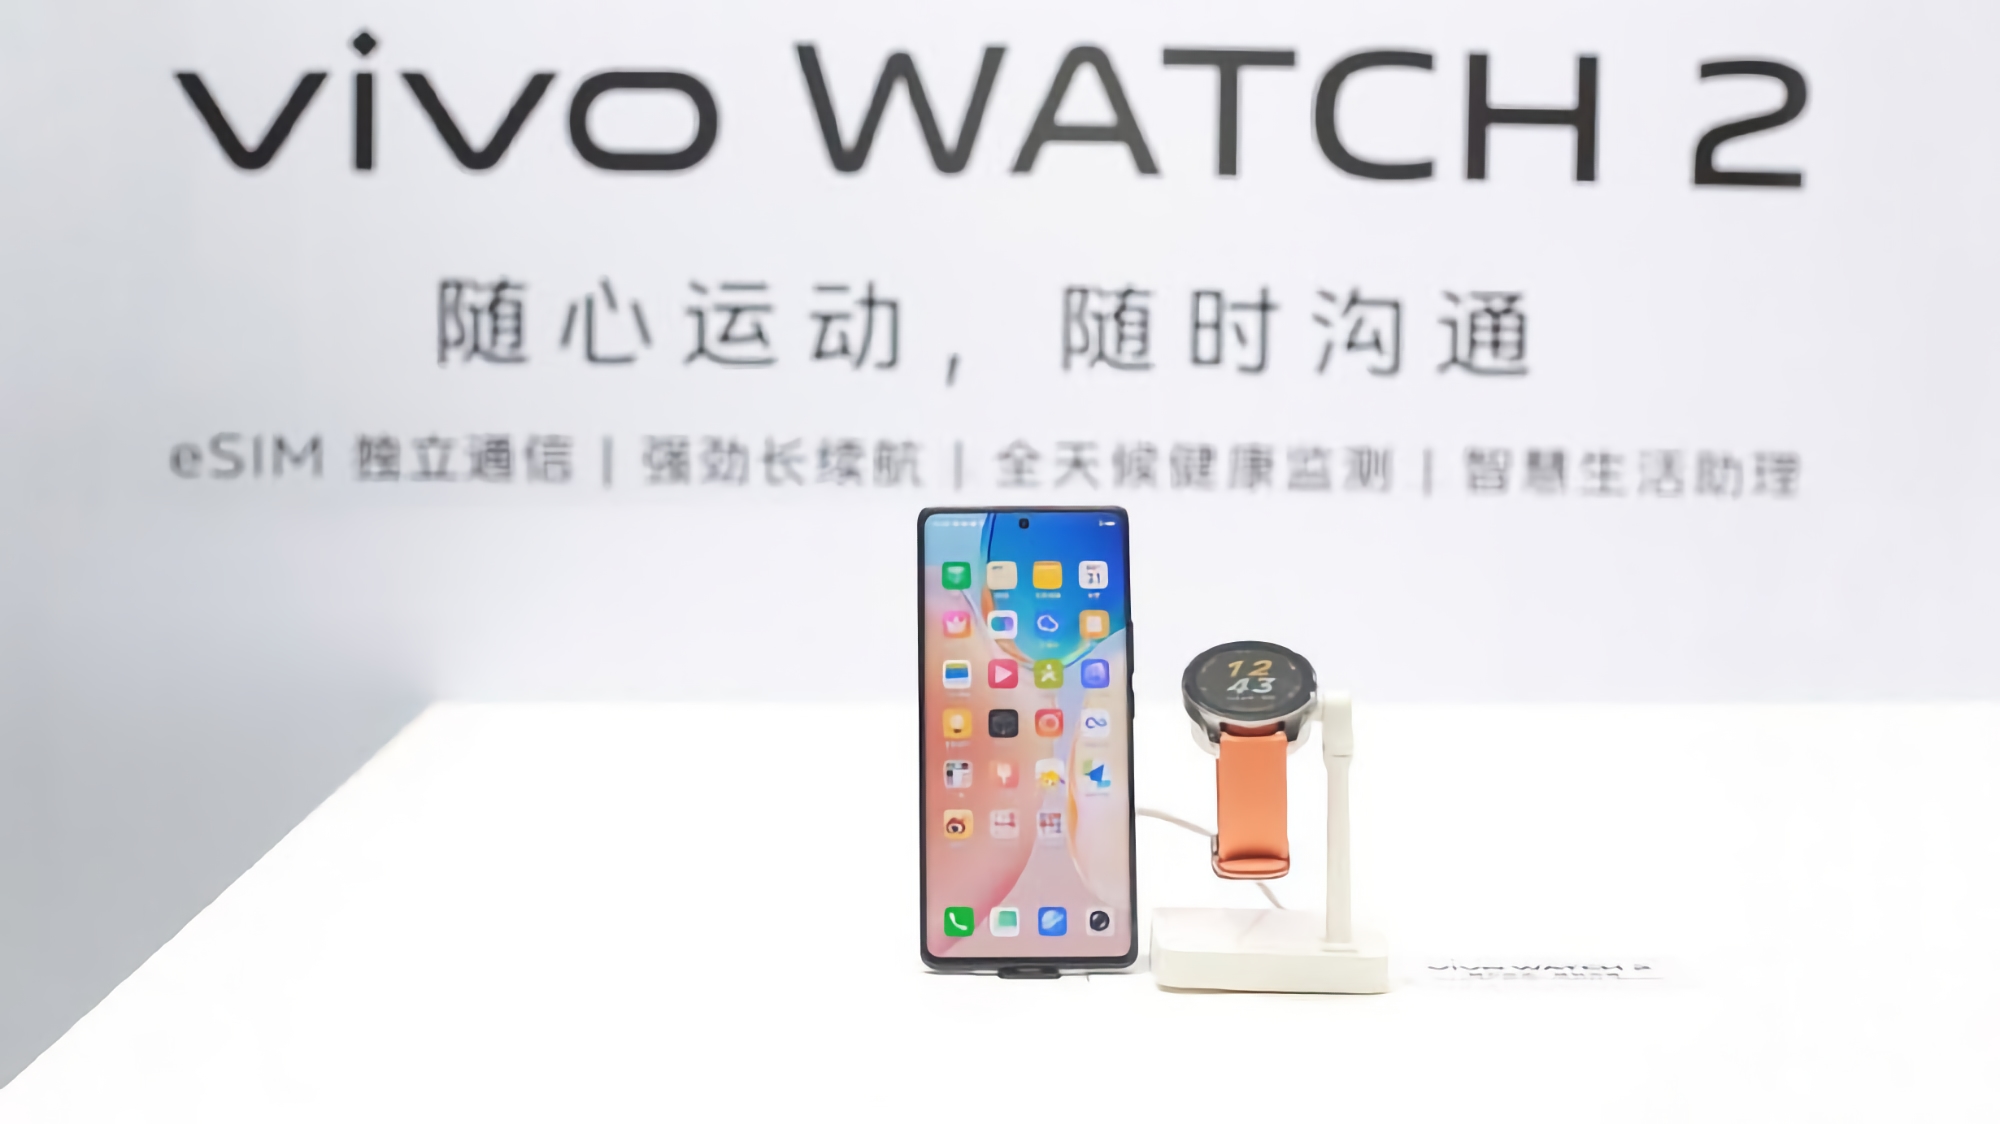 Ohne die Ankündigung abzuwarten: Vivo zeigte eine Smartwatch Vivo Watch 2 mit eSIM-Unterstützung